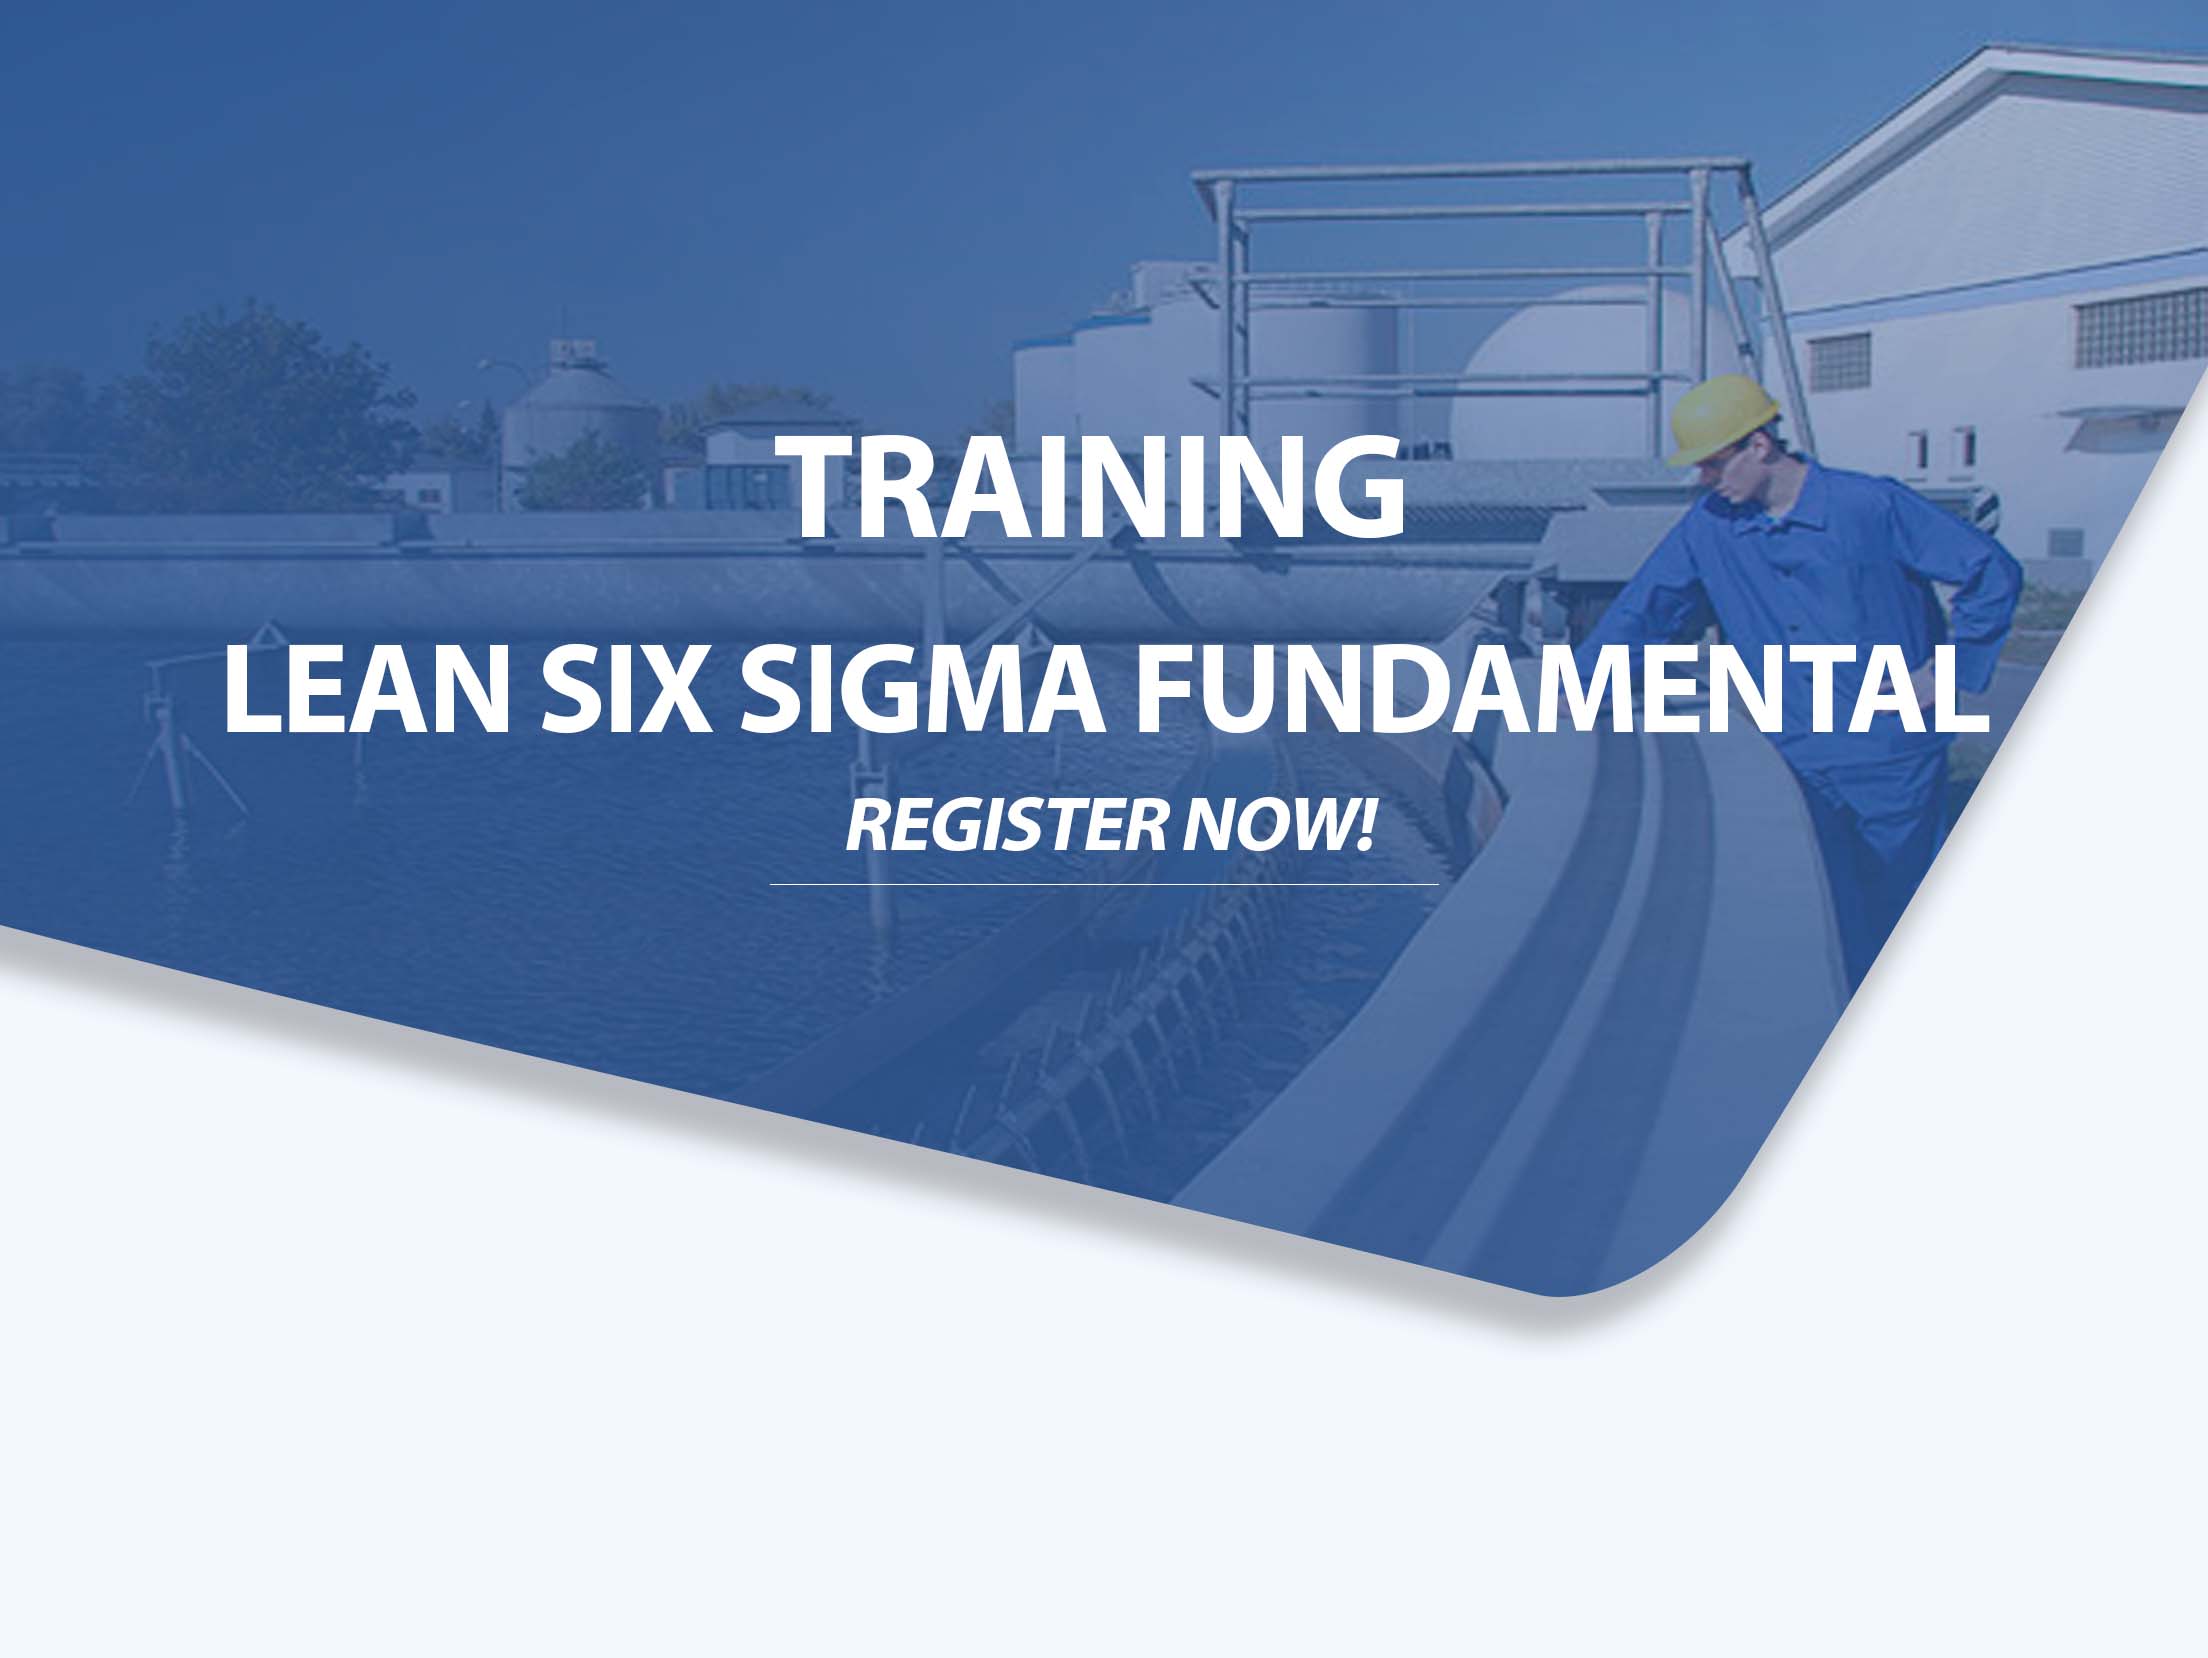 Training Lean Six Sigma Fundamental